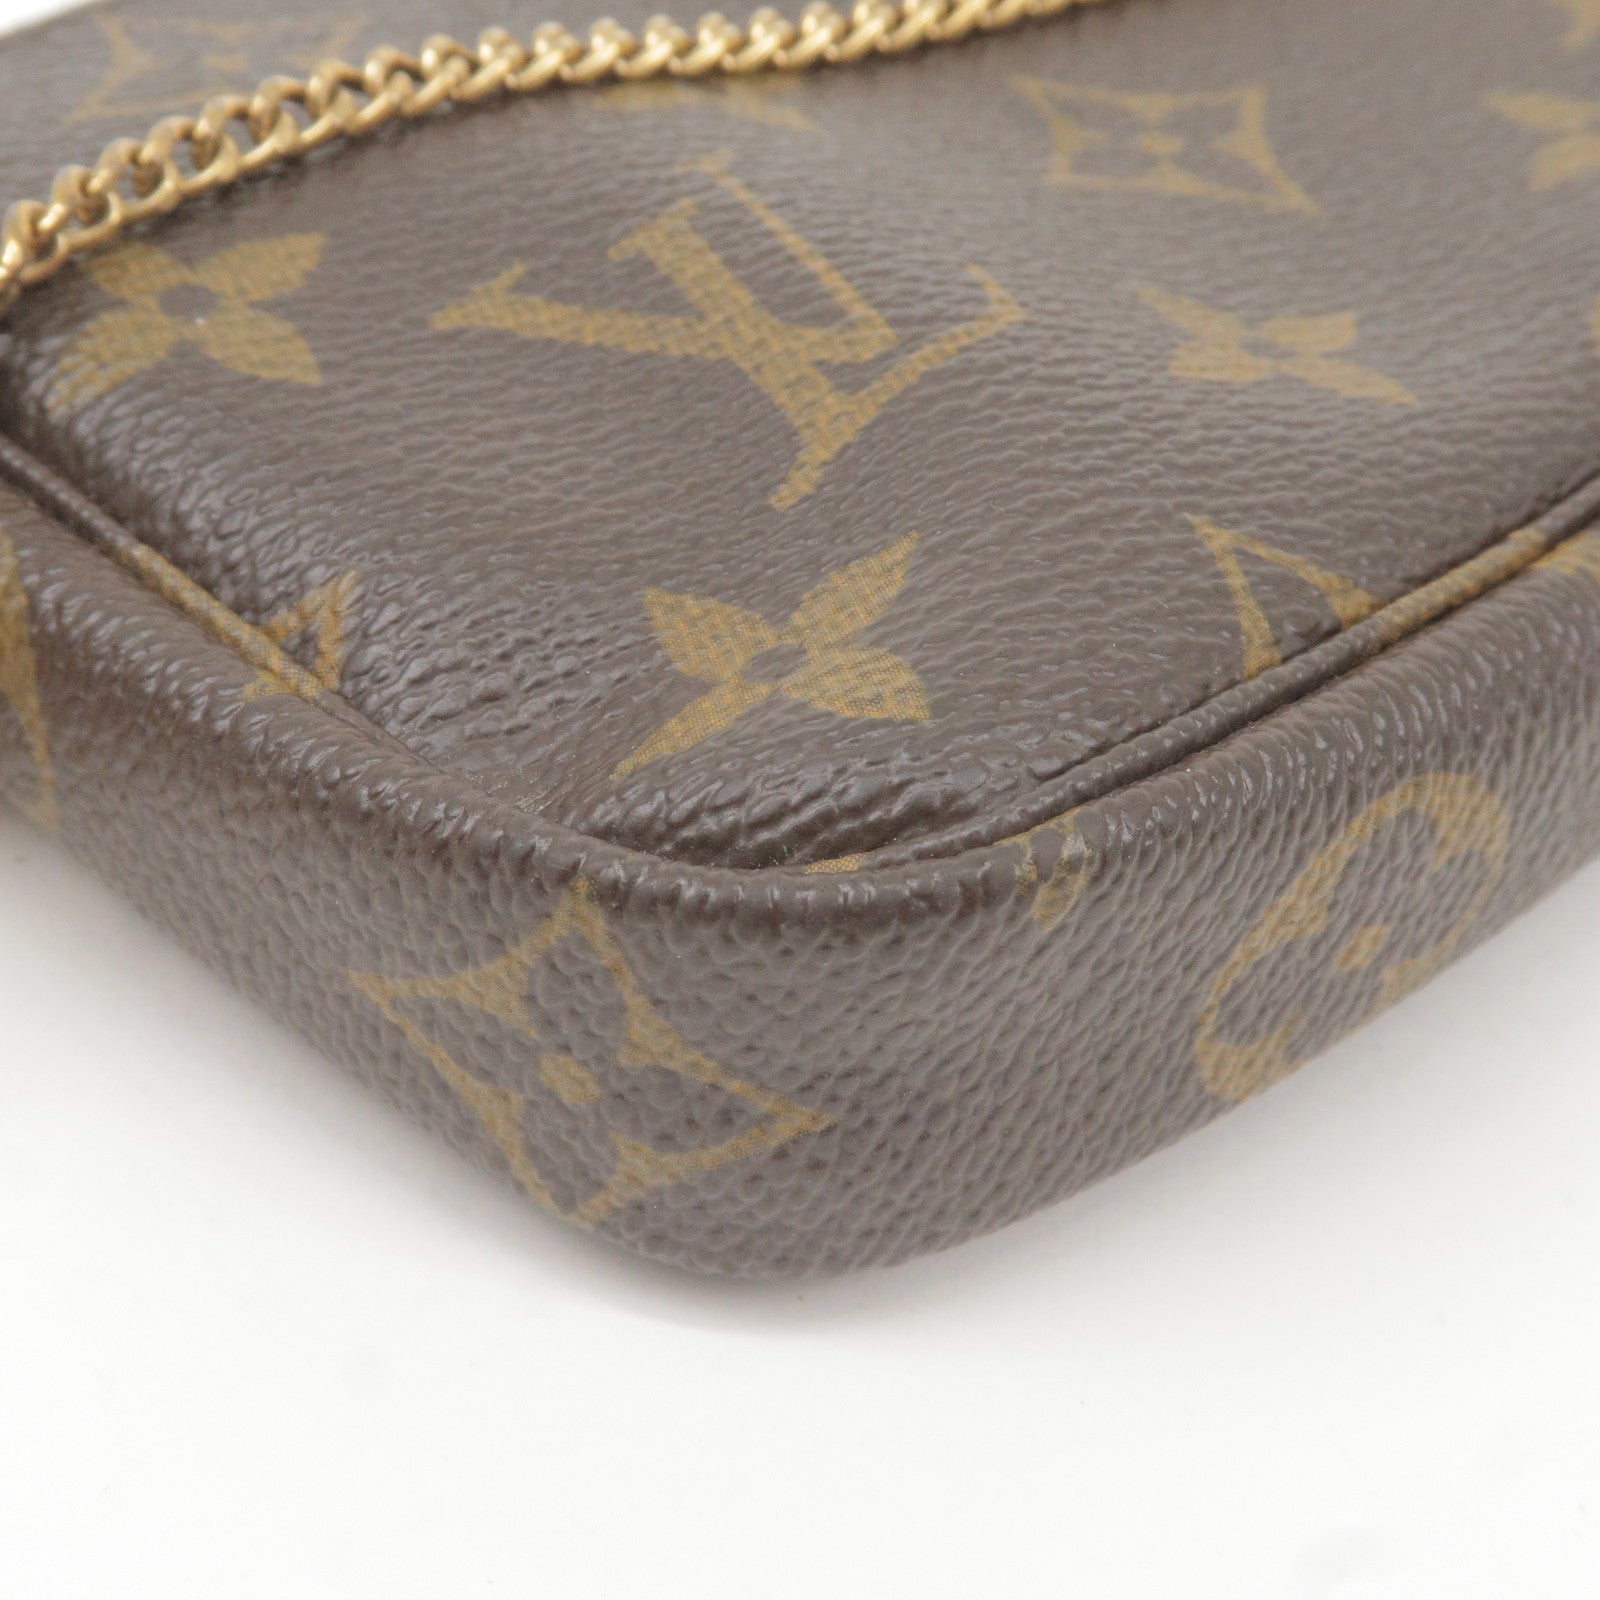 Louis Vuitton - Mini Pochette Accessoires - Brown - Women - Luxury